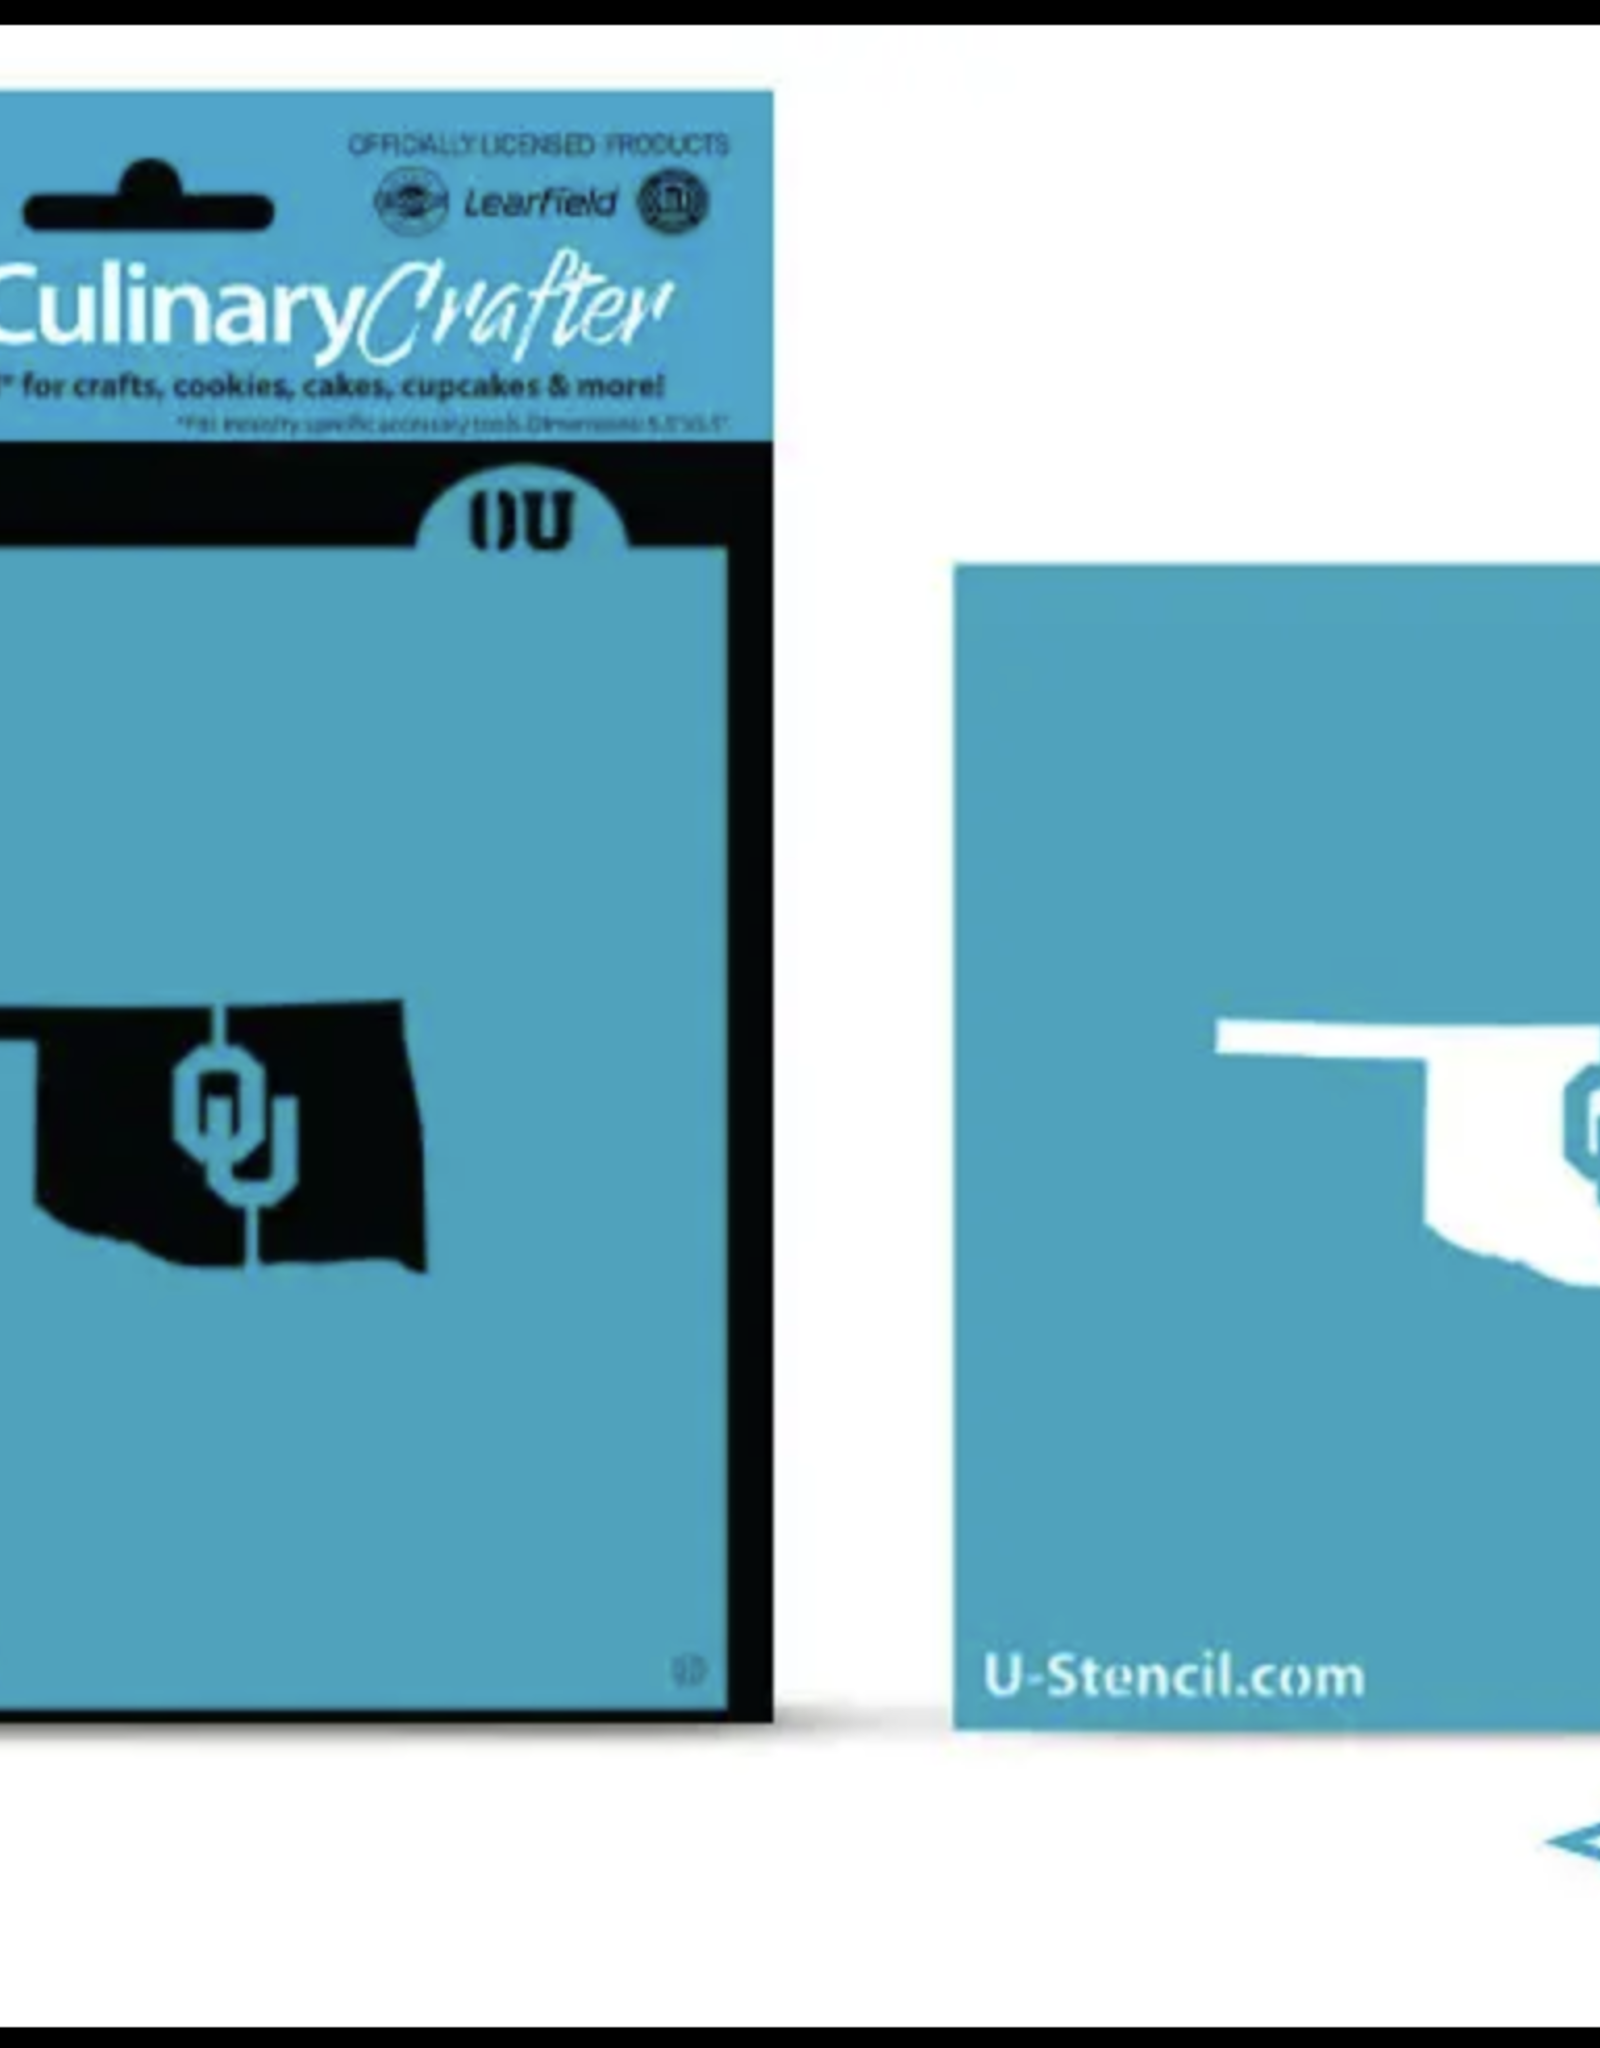 U-Stencil State Shape OU Culinary/Crafter Stencil